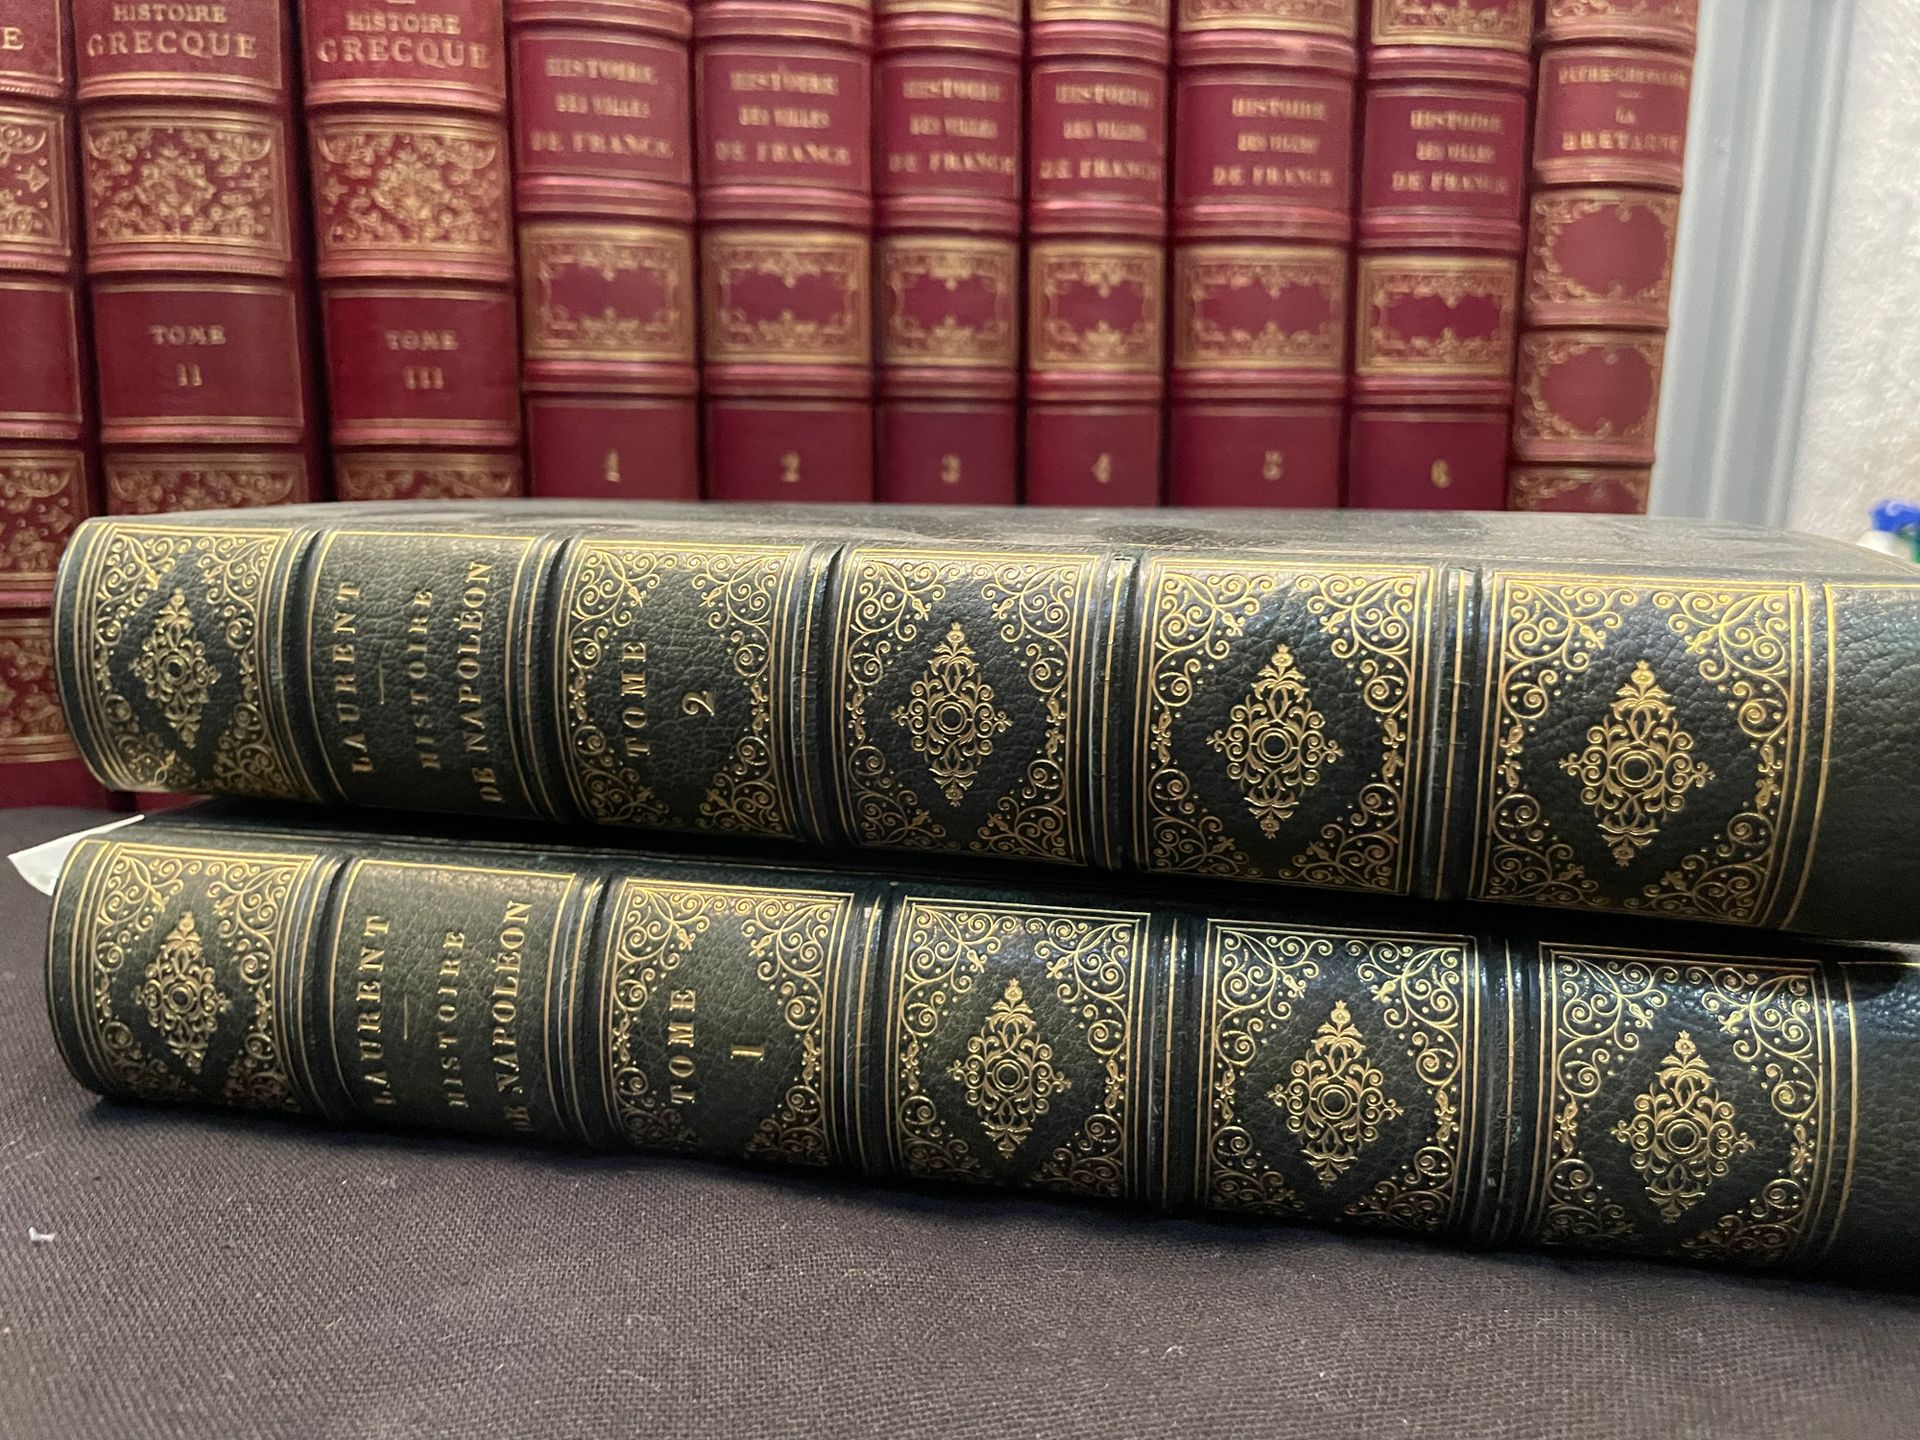 LAURENT DE L'ARDÈCHE Napoleon.
2 Bände (in unverändertem Zustand)